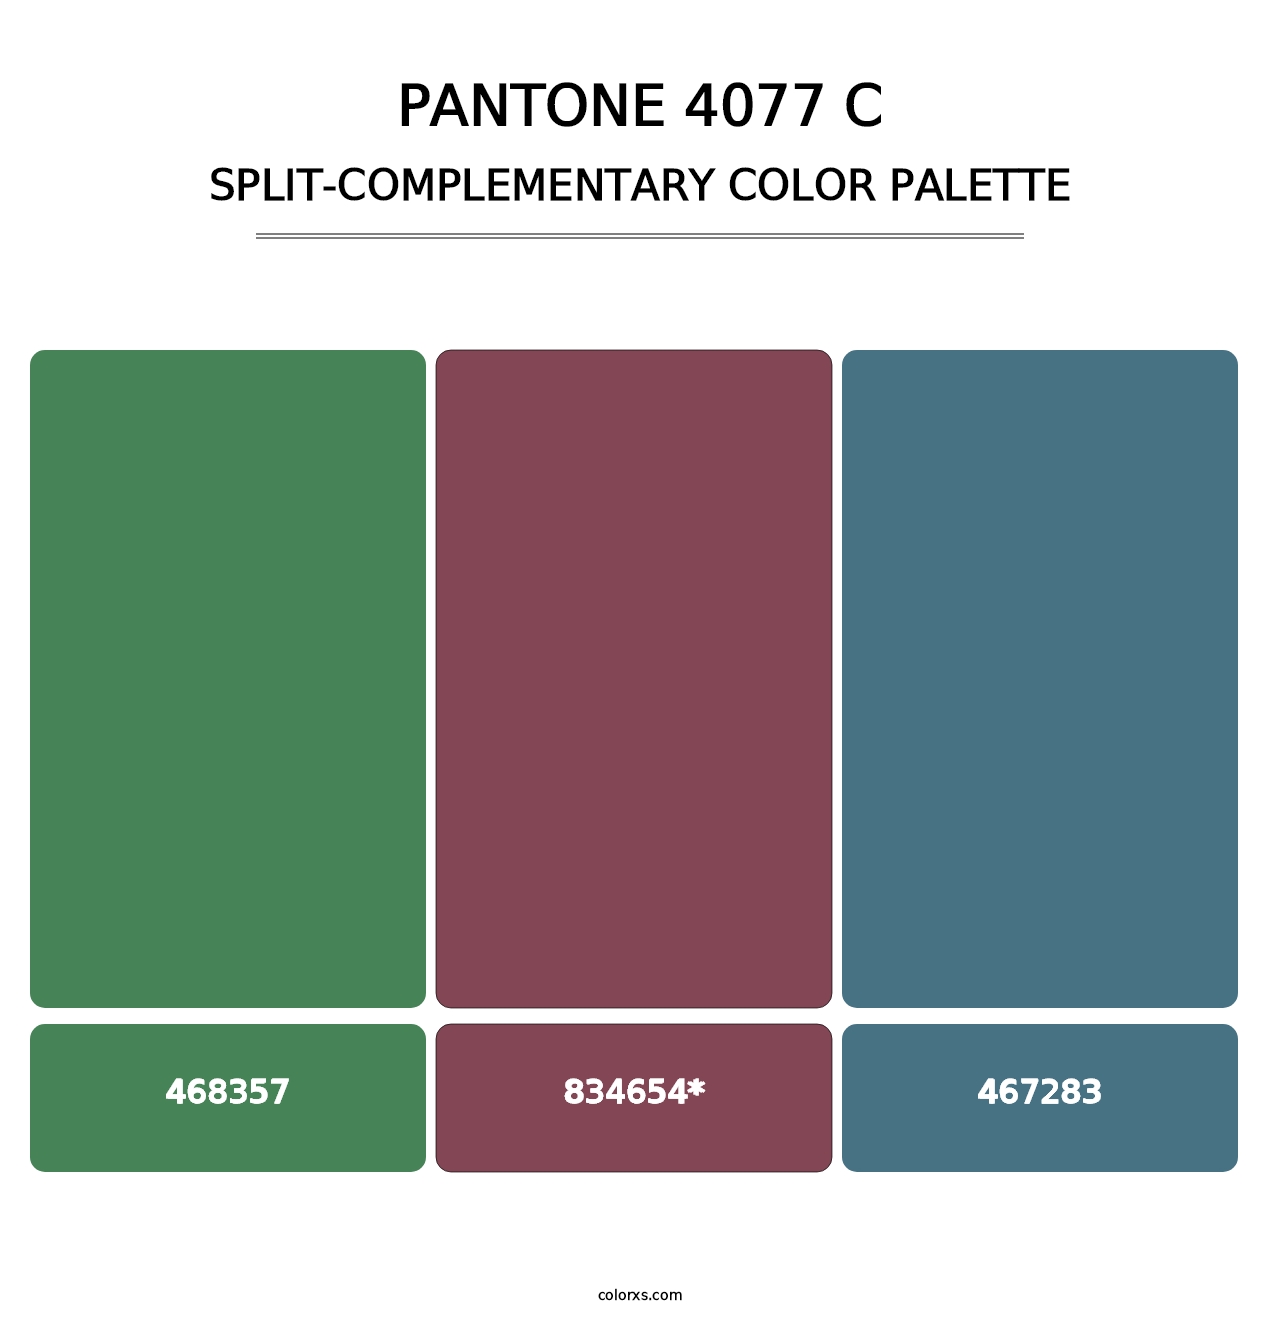 PANTONE 4077 C - Split-Complementary Color Palette